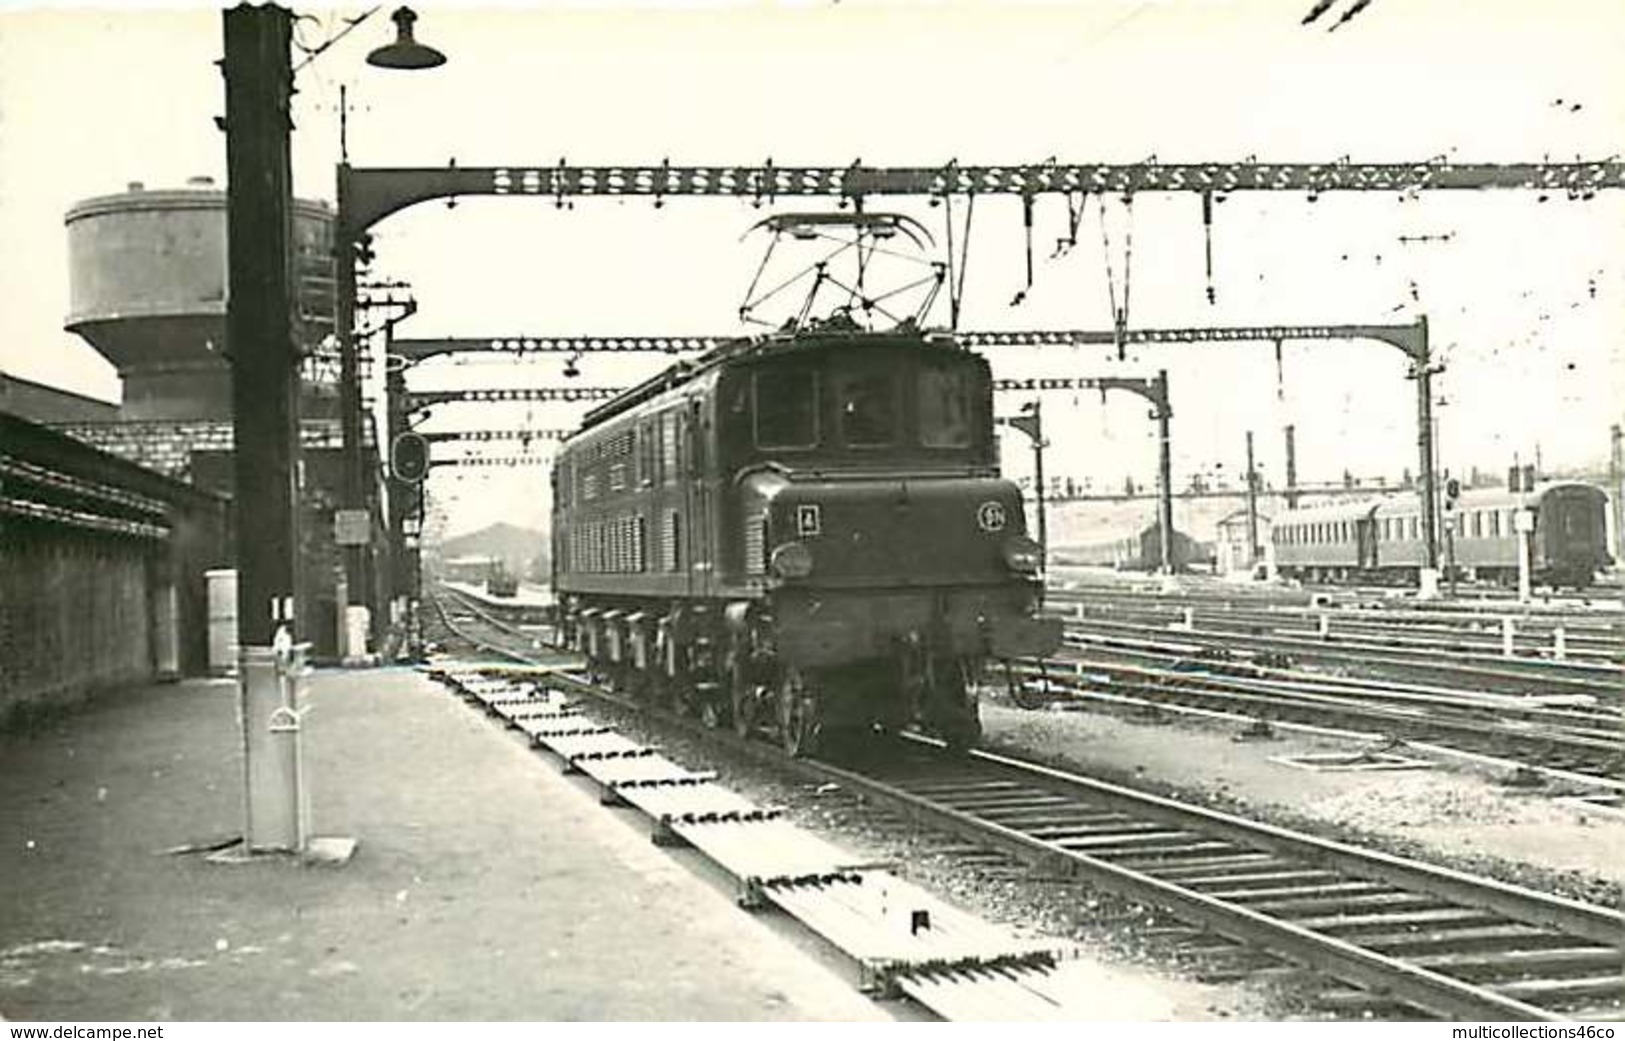 060120 TRANSPORT TRAIN CHEMIN DE FER - PHOTO BREHERET Circa 1950 - 75 Gare D'Austerlitz La 2D2 5301 SNCF - Métro Parisien, Gares